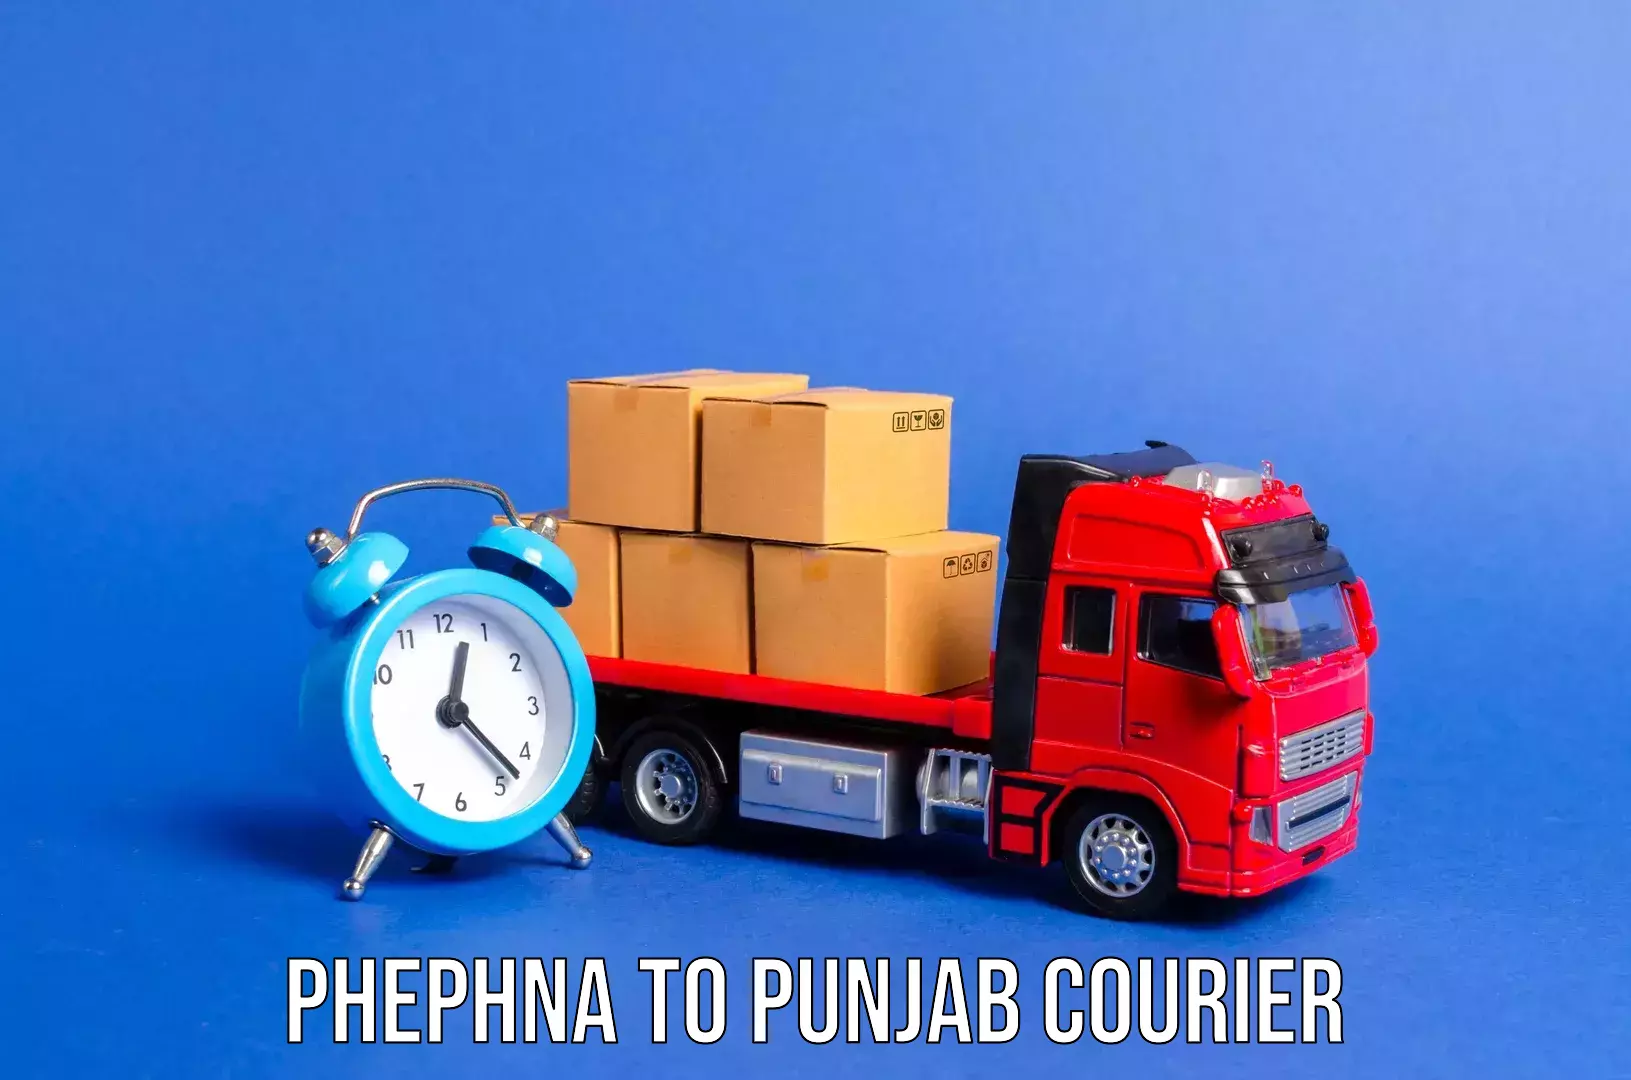 Heavy luggage shipping Phephna to Punjab